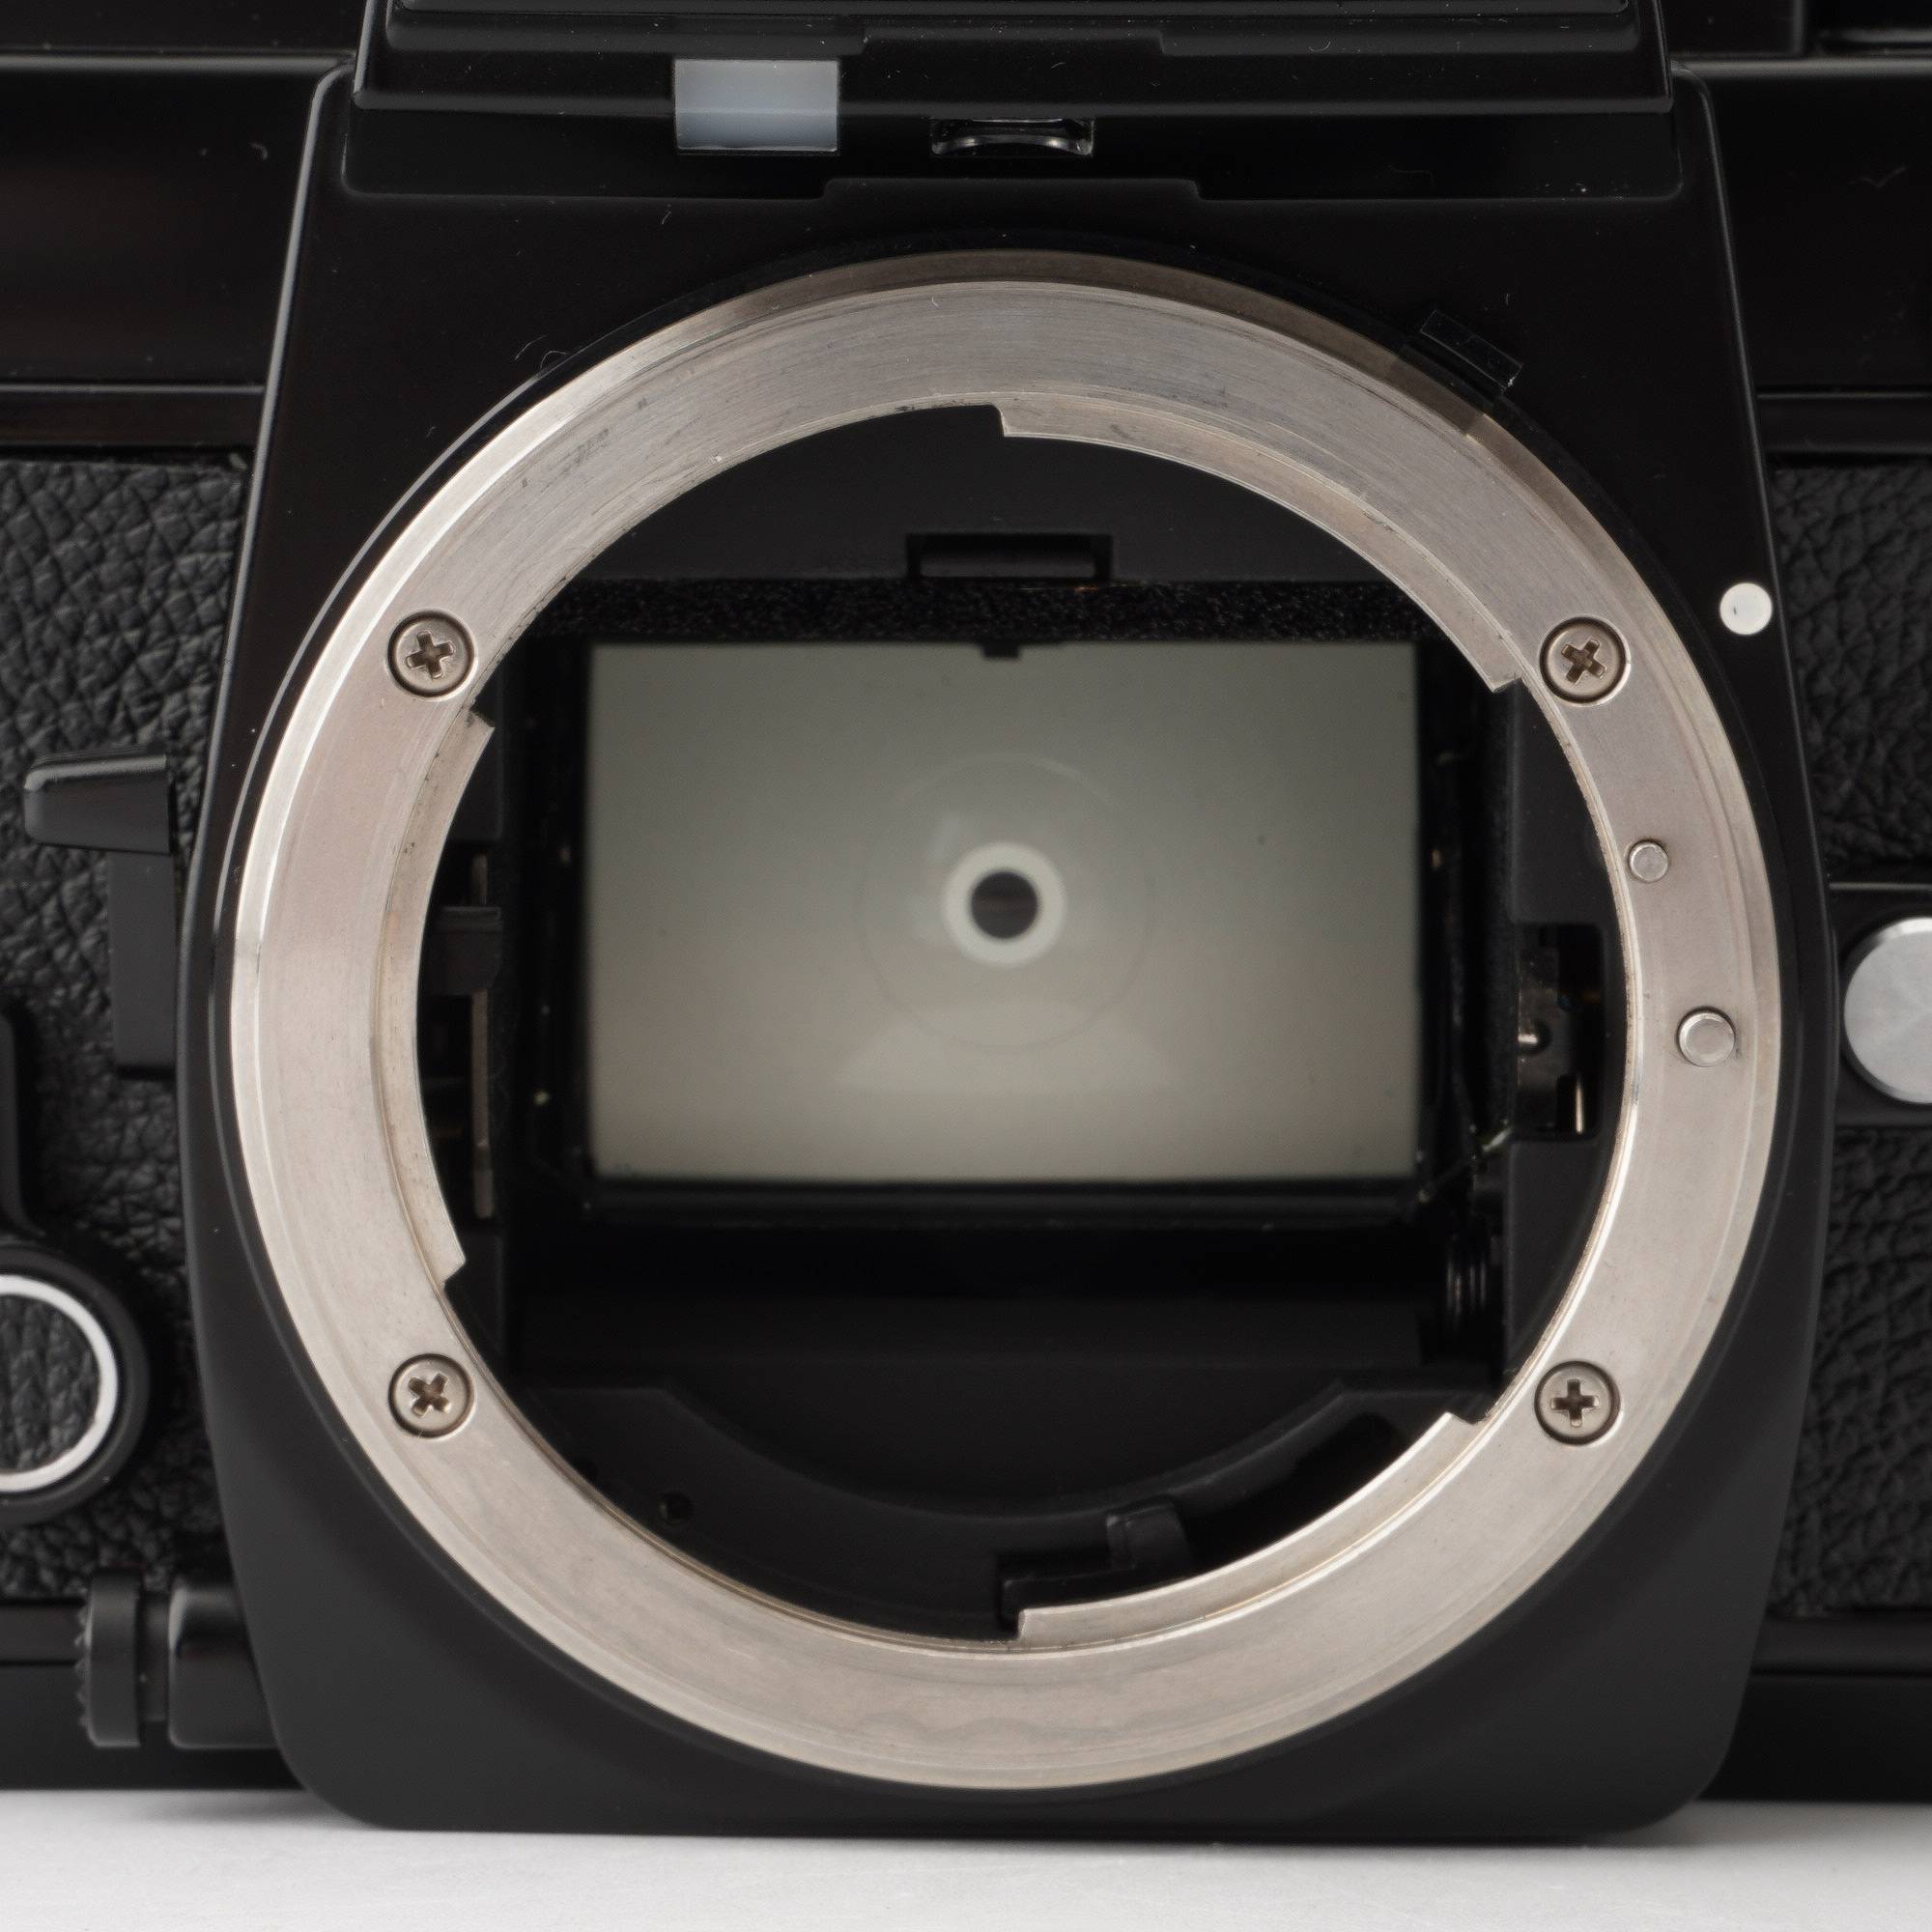 【低価在庫あ】Nikon ニコン FA MF-16 ブラック シャッター フィルムカメラ